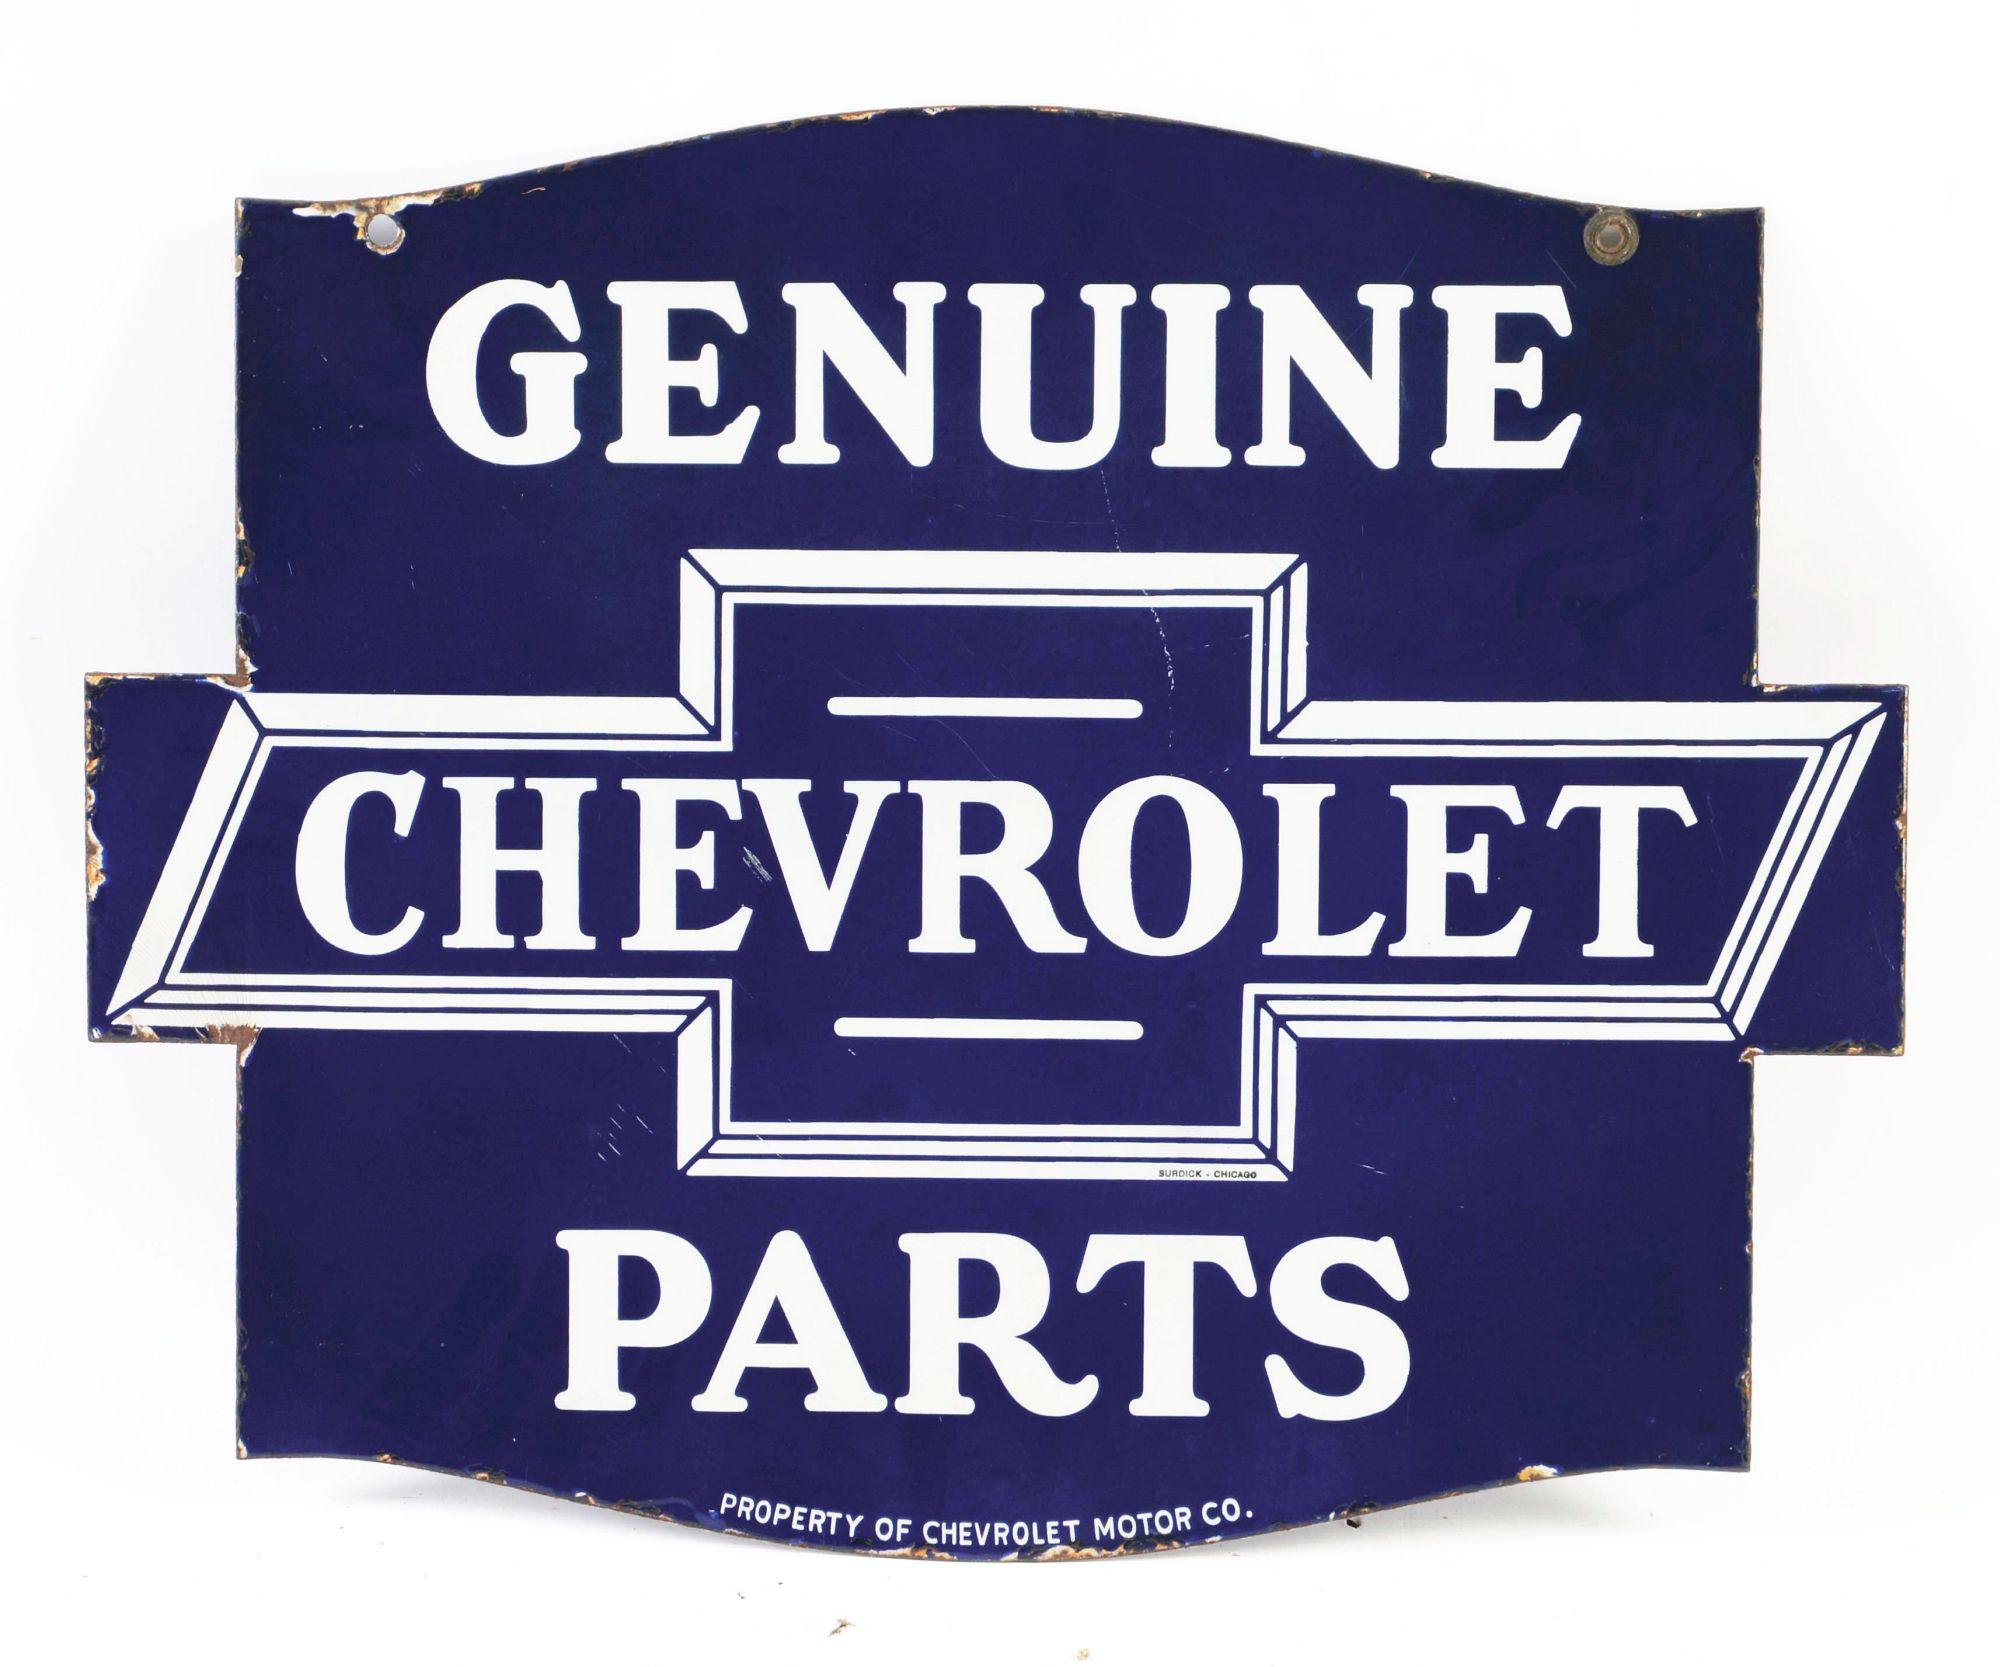 Chevrolet Genuine Parts Die Cut Porcelain Sign W/ Bowtie Graphic.